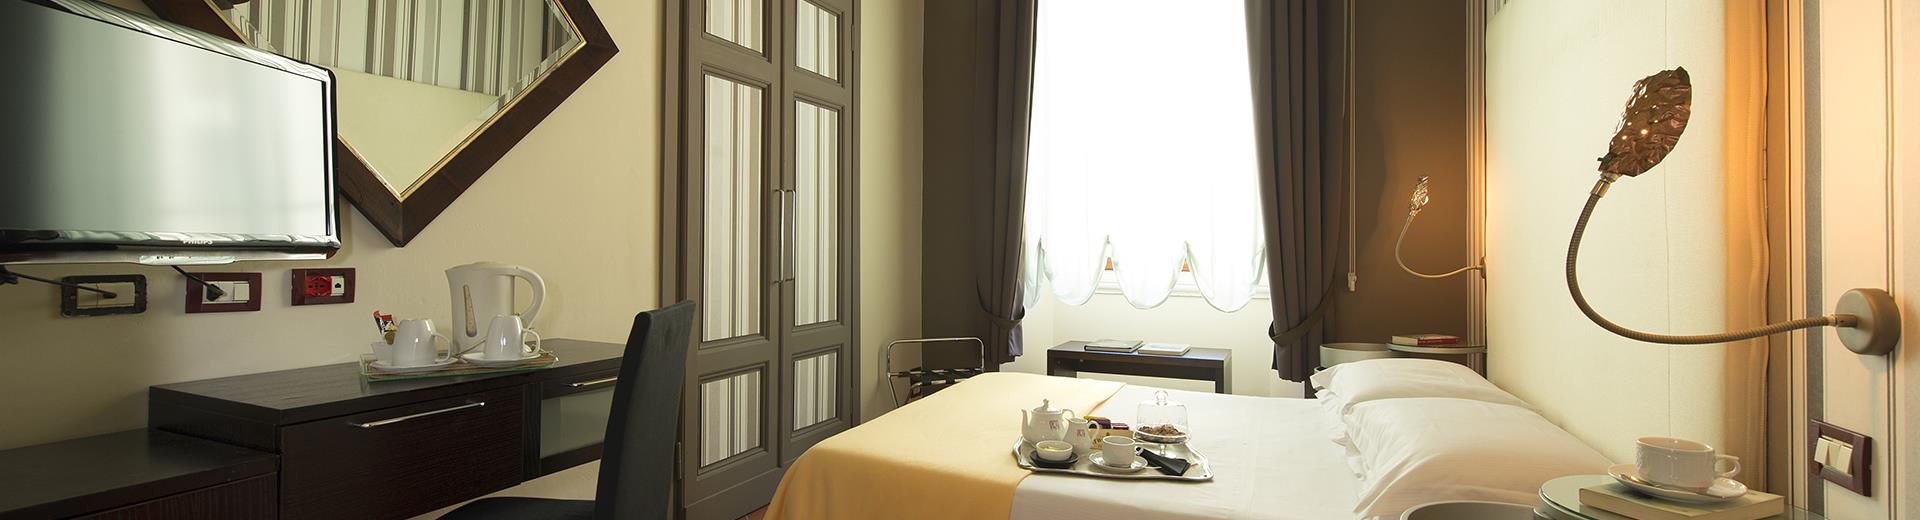 Se soggiorni da solo a Firenze, scegli tutto il comfort delle camere standard singole dell''''''''''''''''Hotel De La Pace, il nostro delizioso 4 stelle in pieno centro!